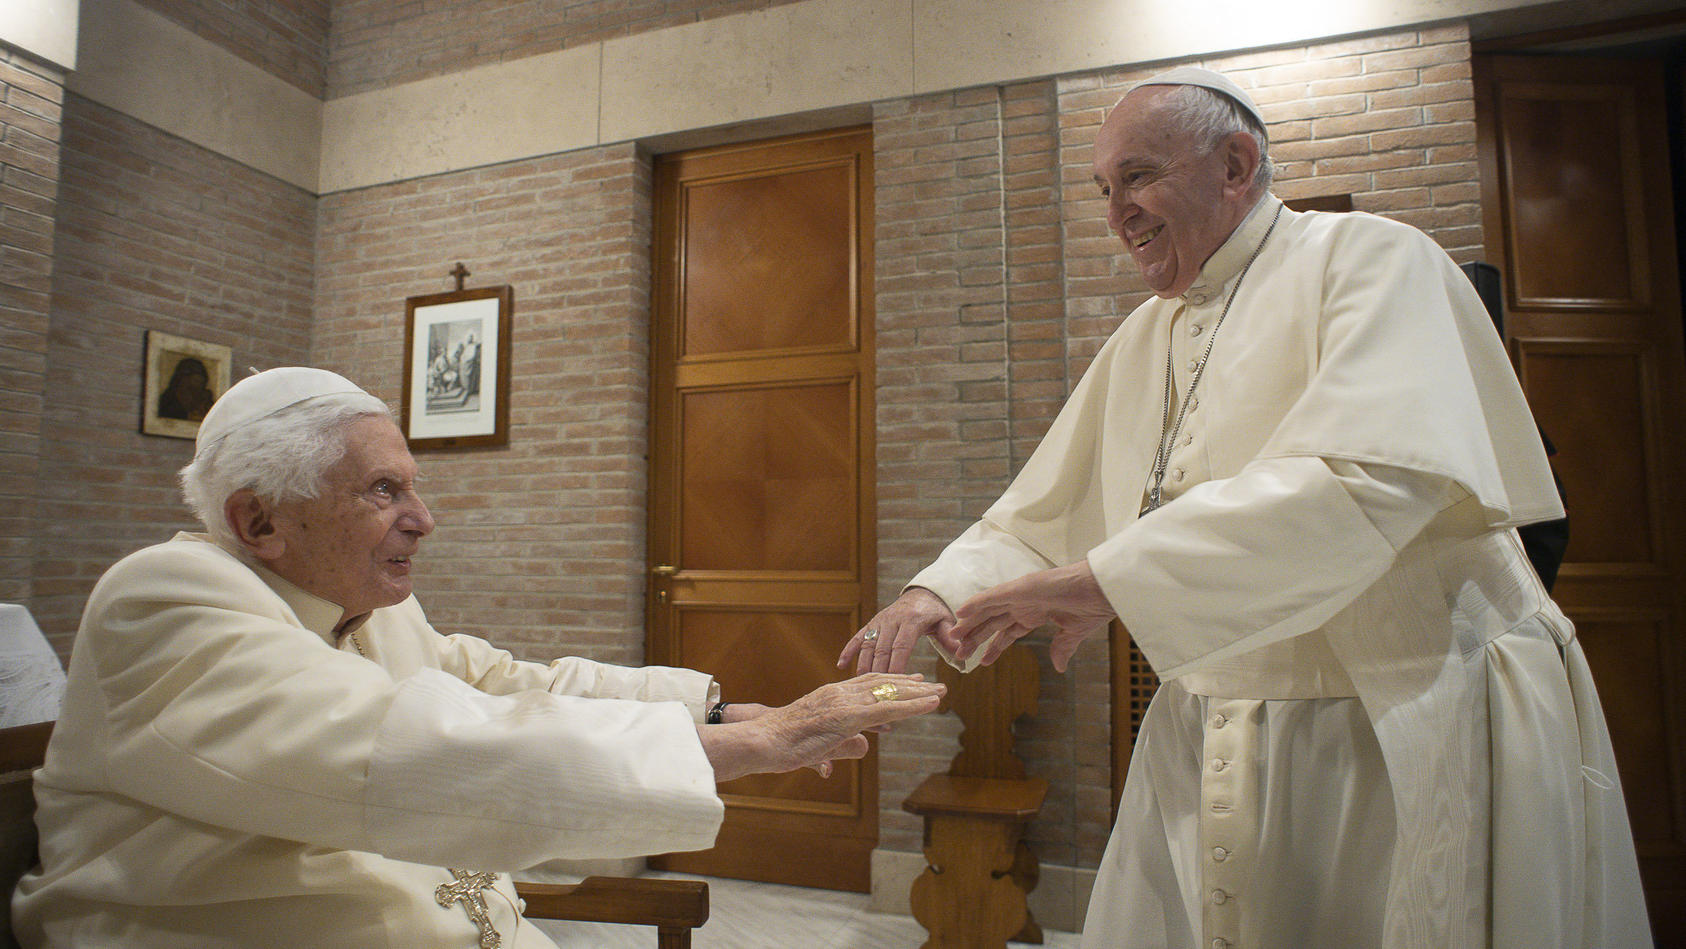 28.11.2020, Vatikan, Vatikanstadt: Papst Franziskus (r) gibt nach dem Konsortium dem emeritierten Papst Benedikt XVI. bei einem Besuch mit den ernannten Kardinälen die Hand. In einer für den Vatikan ungewöhnlichen Zeremonie angesichts der Corona-Pand